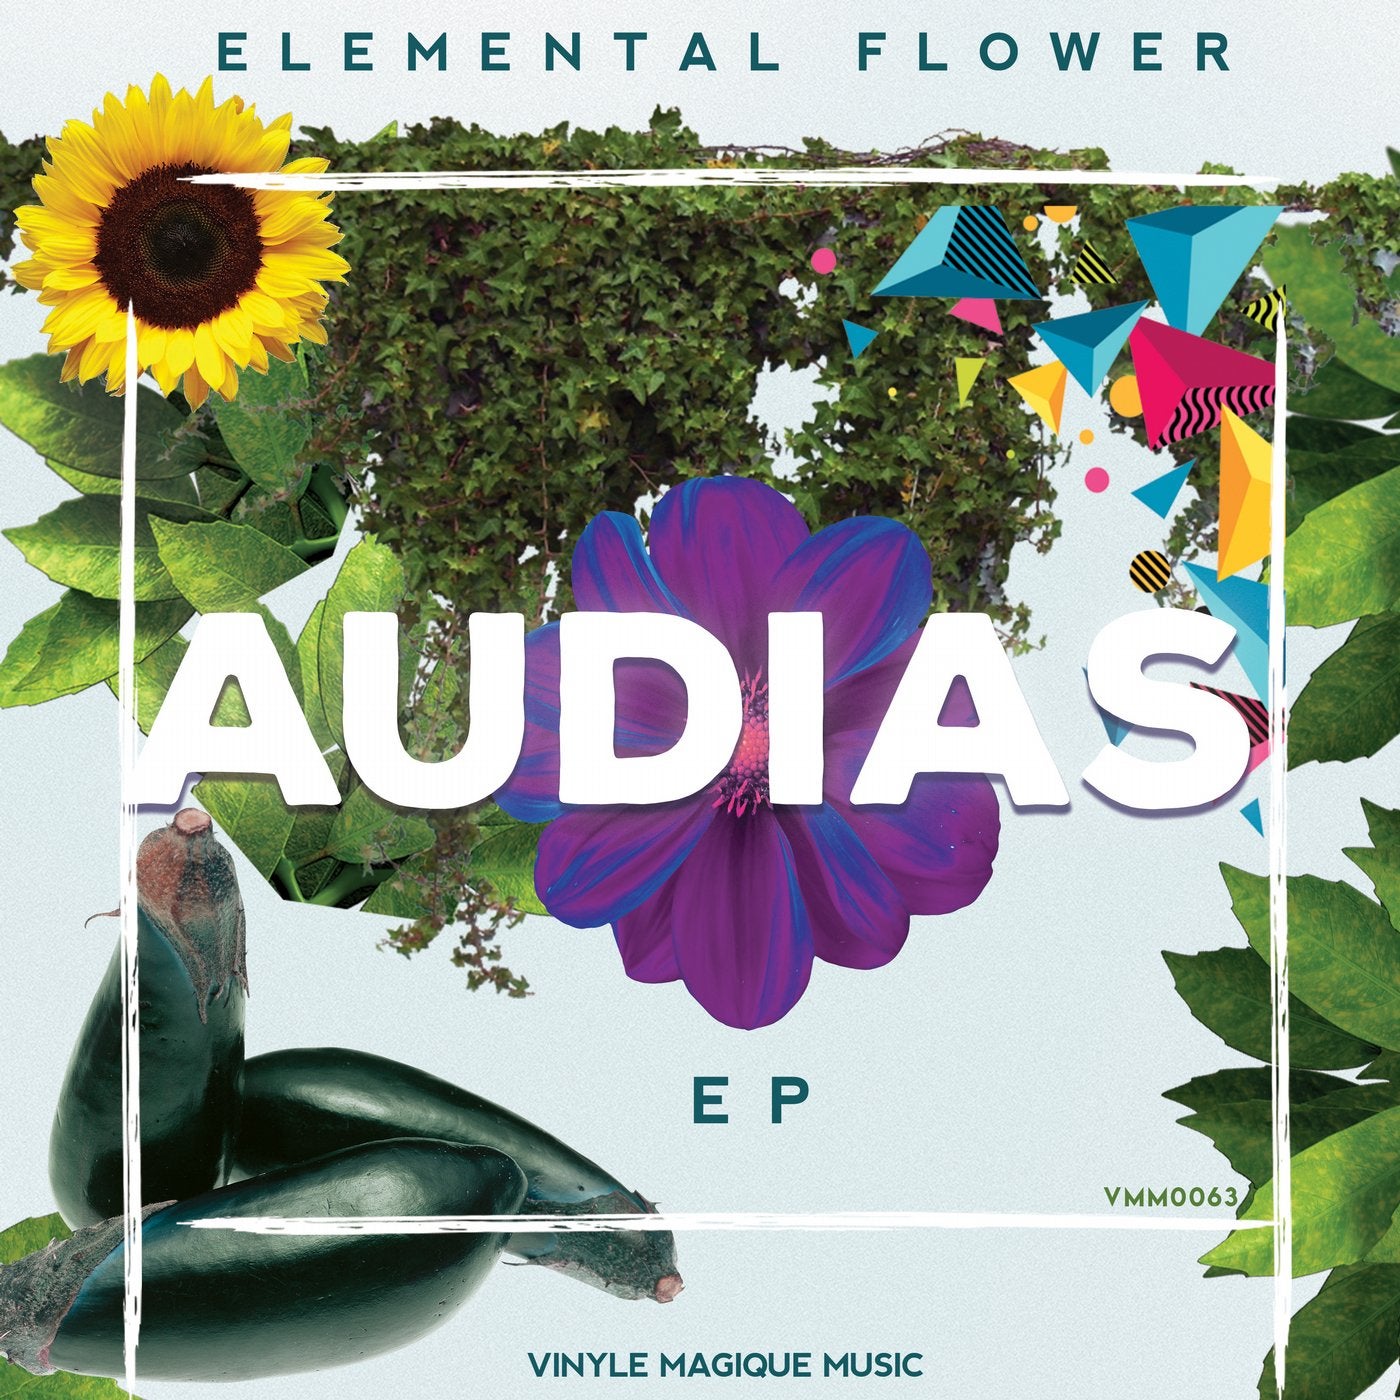 Elemental Flower EP